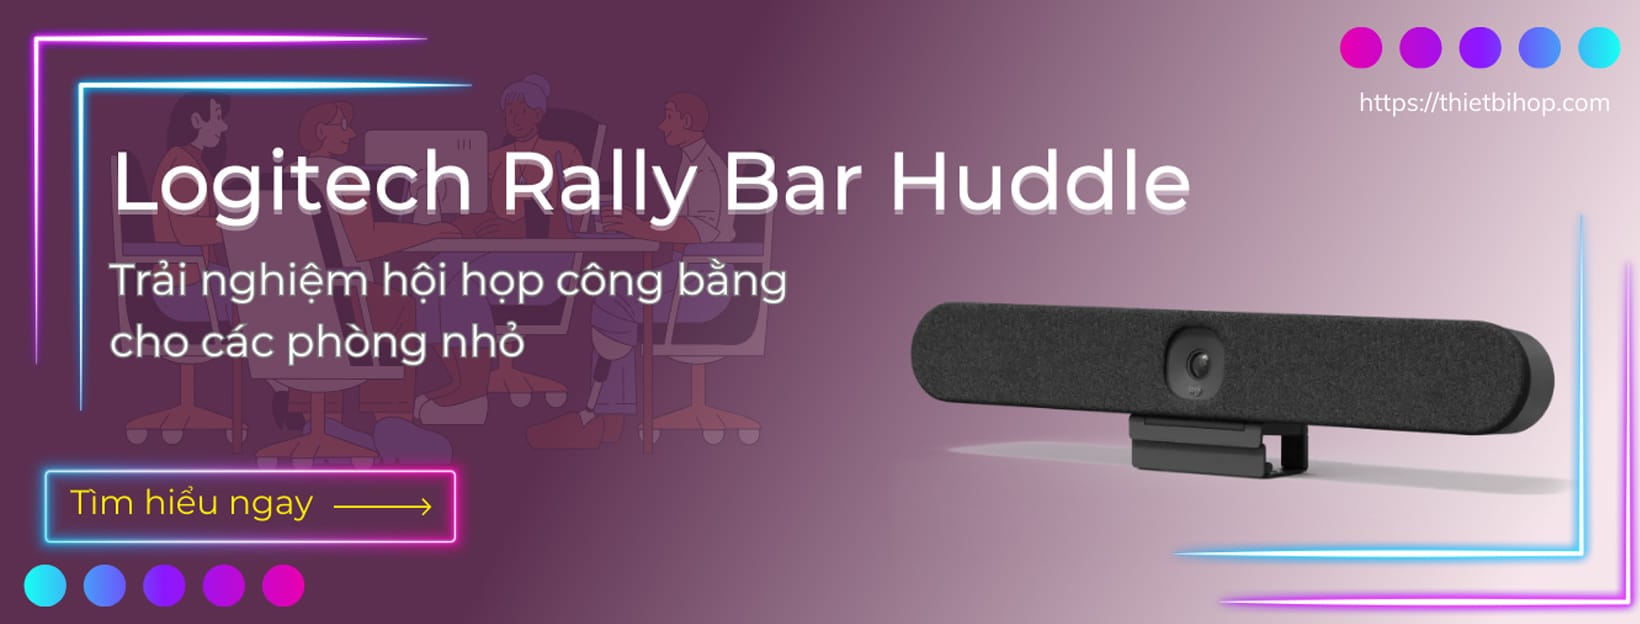 logitech rally bar huddle cho trải nghiệm hội họp công bằng